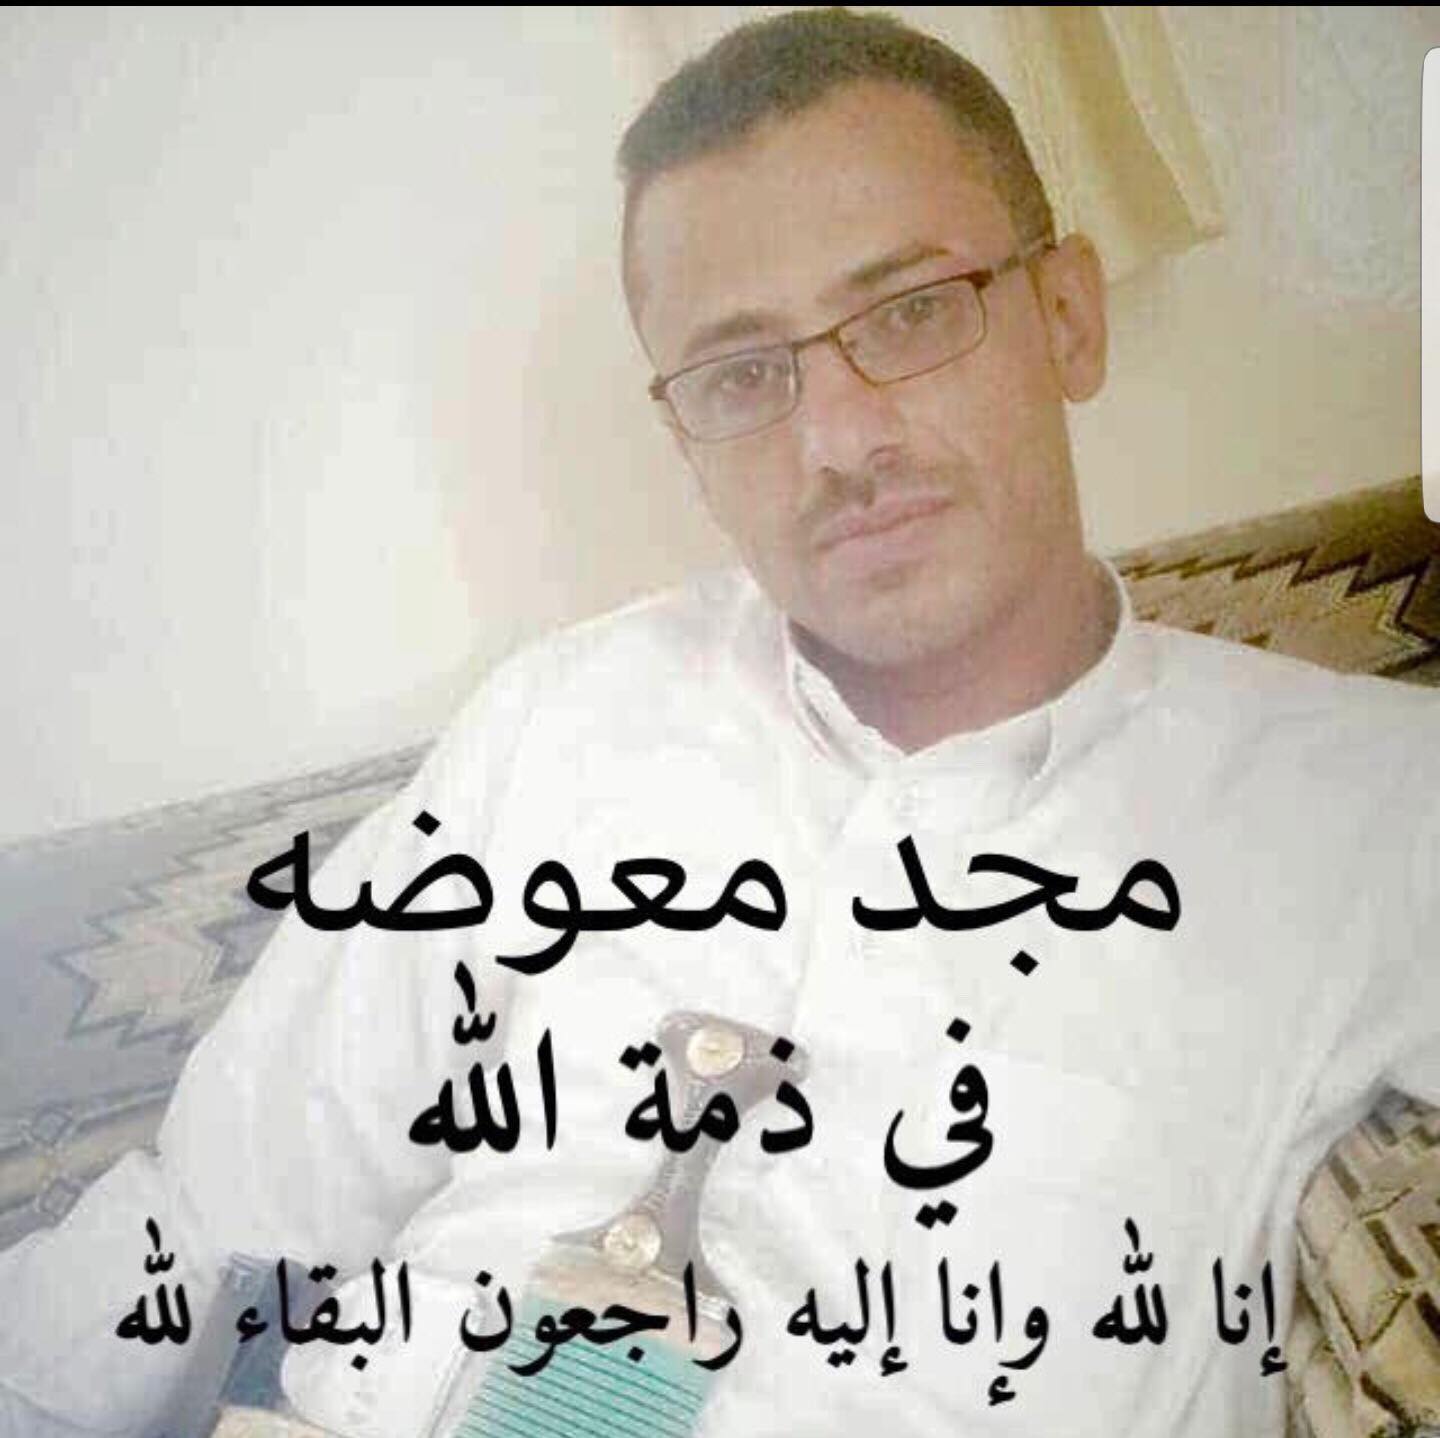 شاهد بالصورة .. مليشيا الحوثي تقتحم منزل ”مواطن ” وتقتله أمام زوجته وأطفاله .. لهذا السبب    